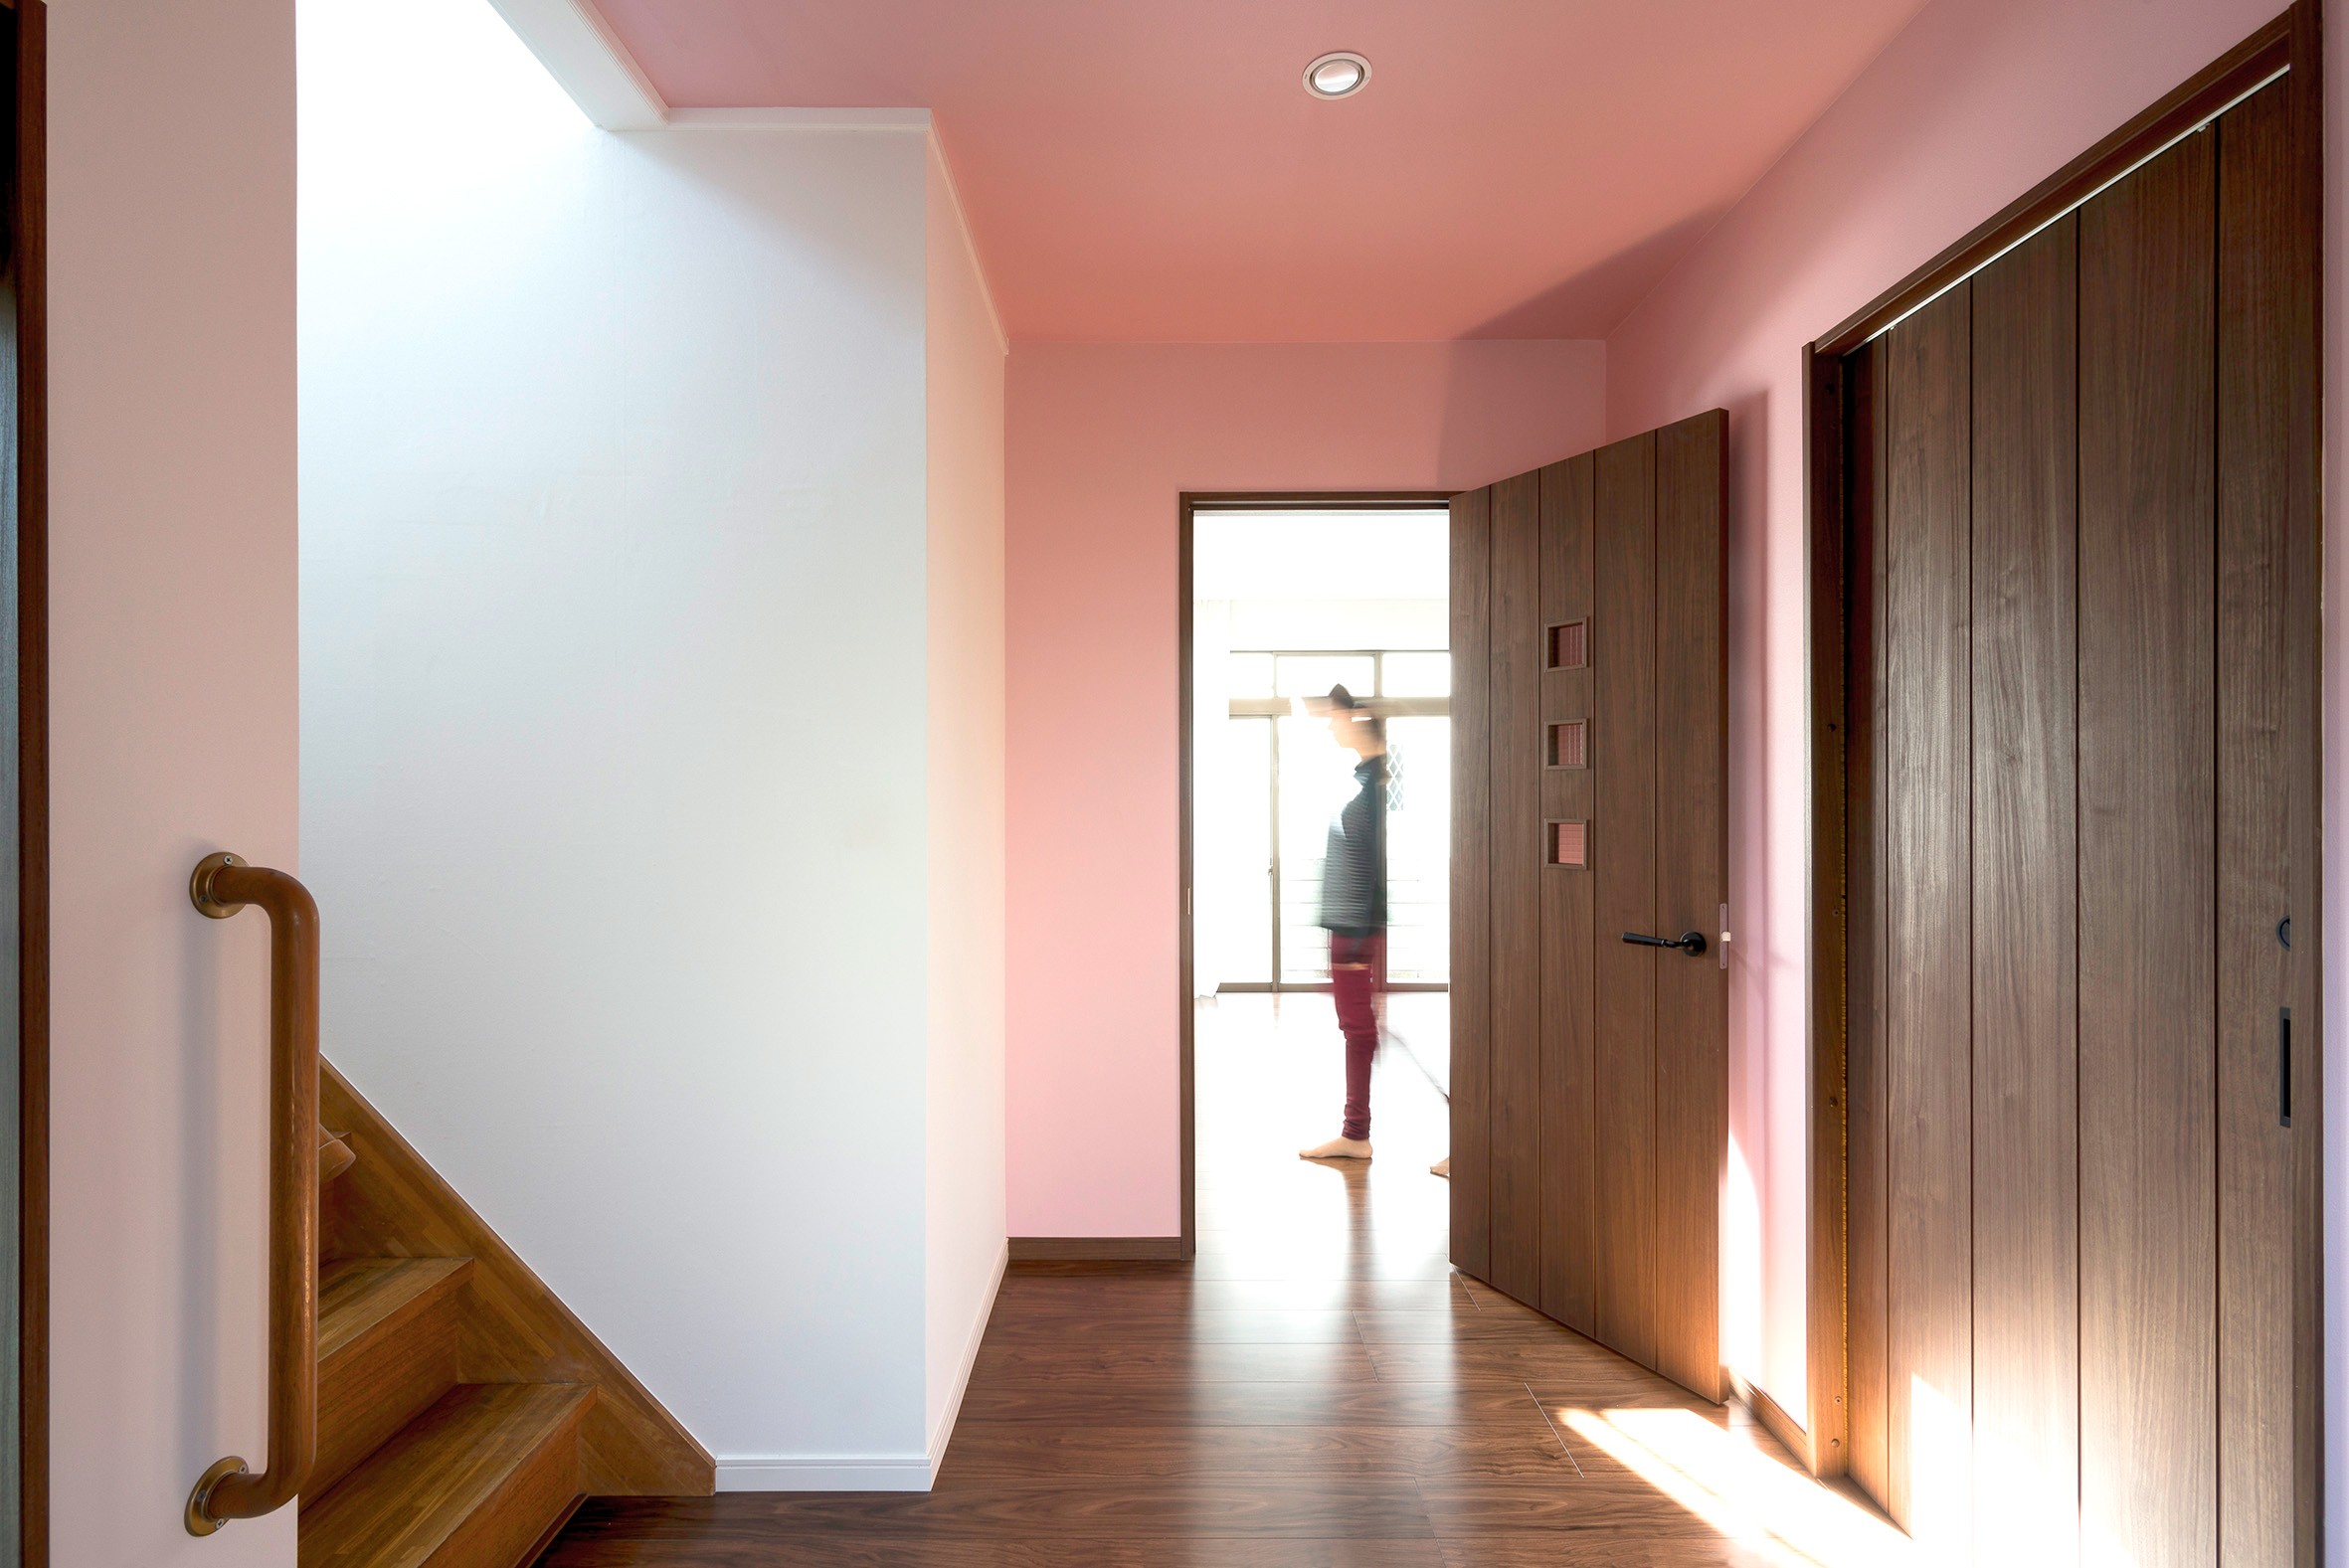 同一色の壁紙で天井と壁紙に一体感をつくる 戸建リノベーション事例